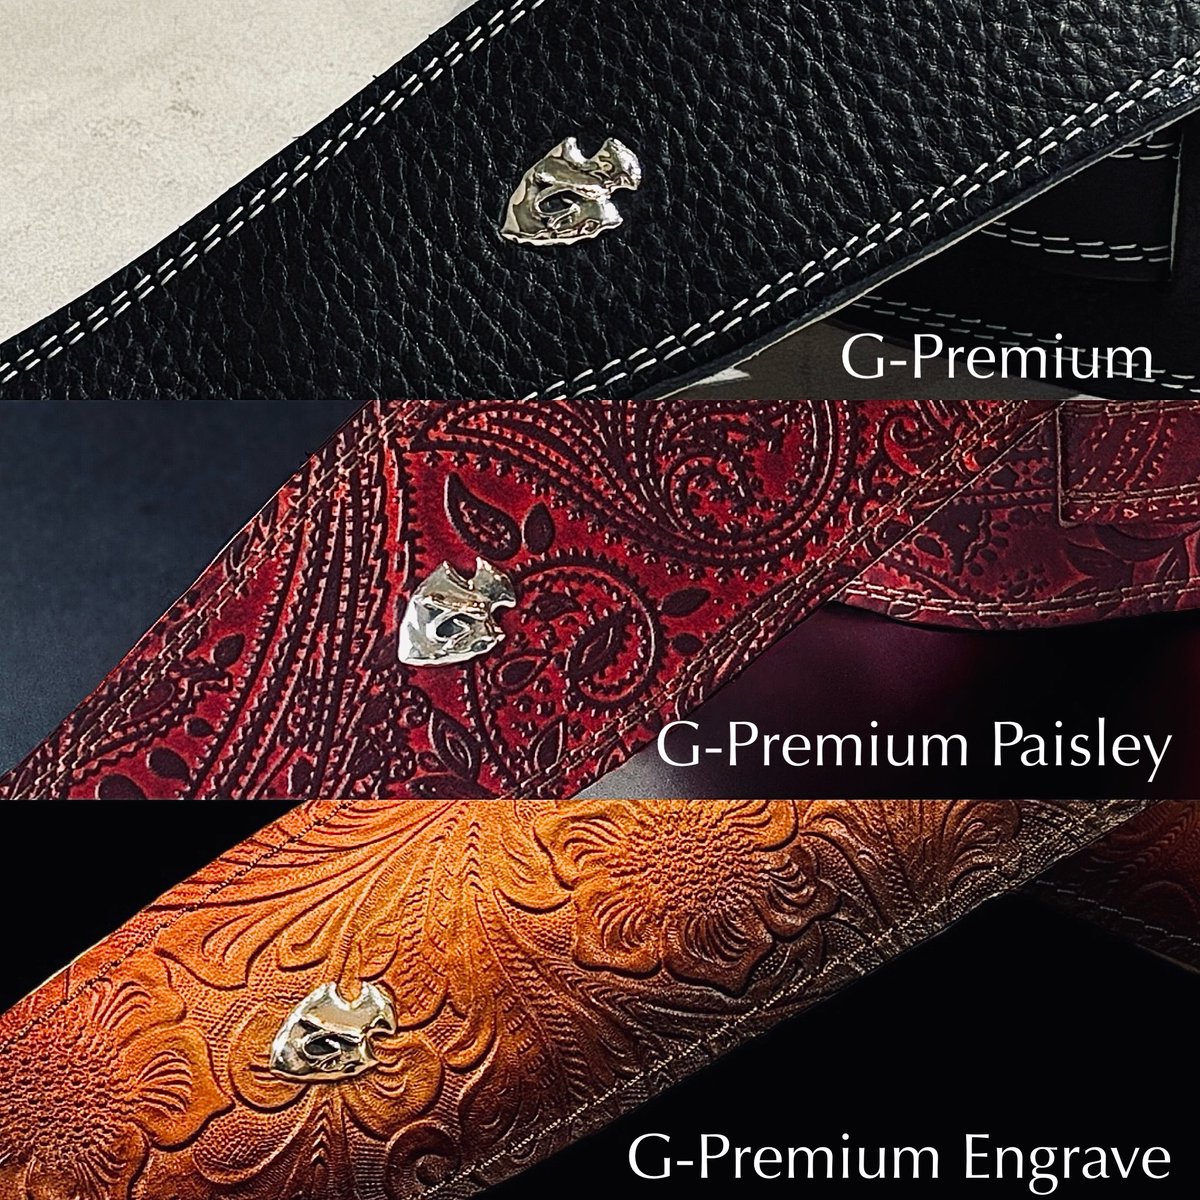 G-Premiumが3種類になりました！